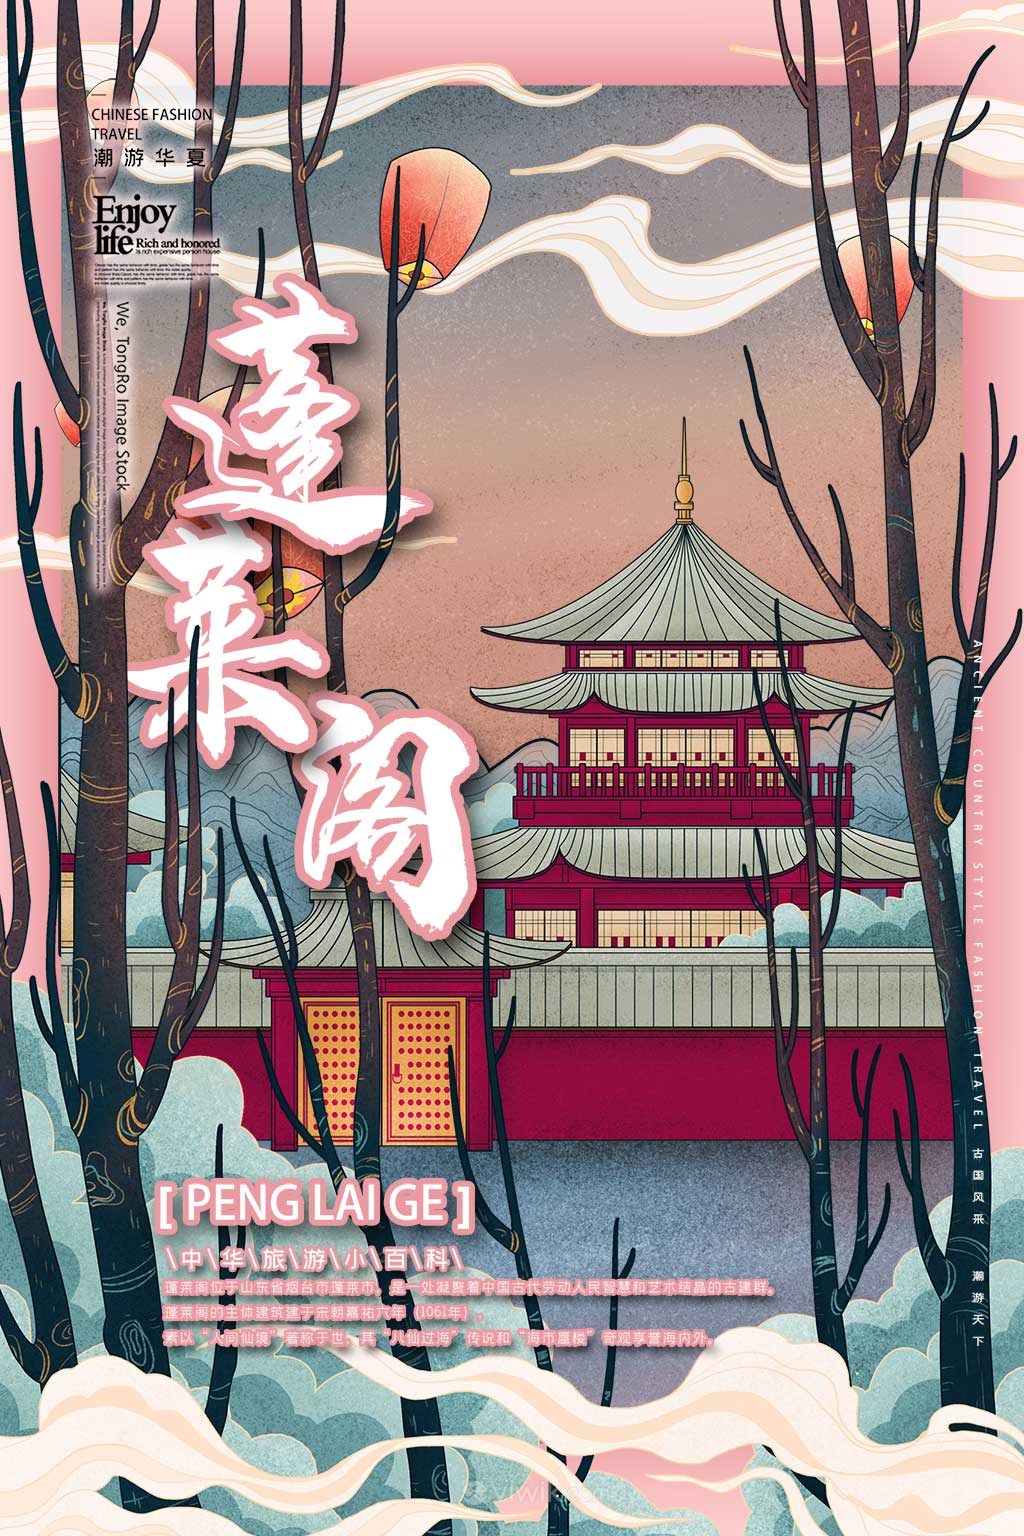 中国城市潮旅游烟台蓬莱阁手绘海报素材